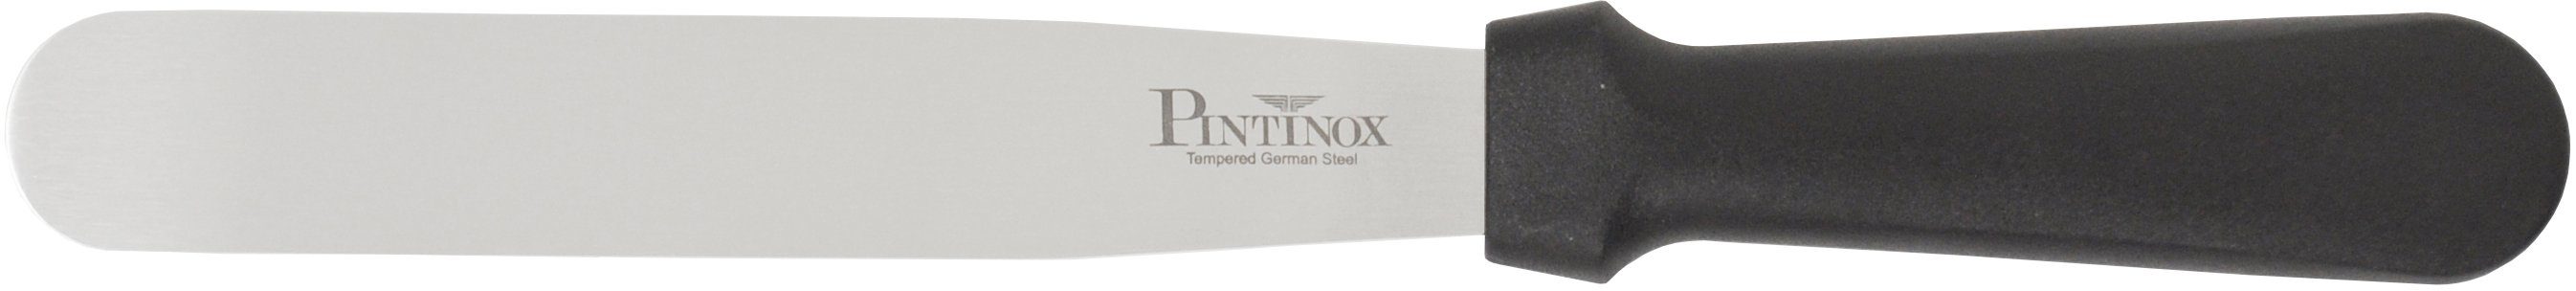 PINTINOX Streichpalette Professional, Spatel Edelstahl, 15,9 spülmaschinengeeinget, 1 1 cm Spatel 10,5cm